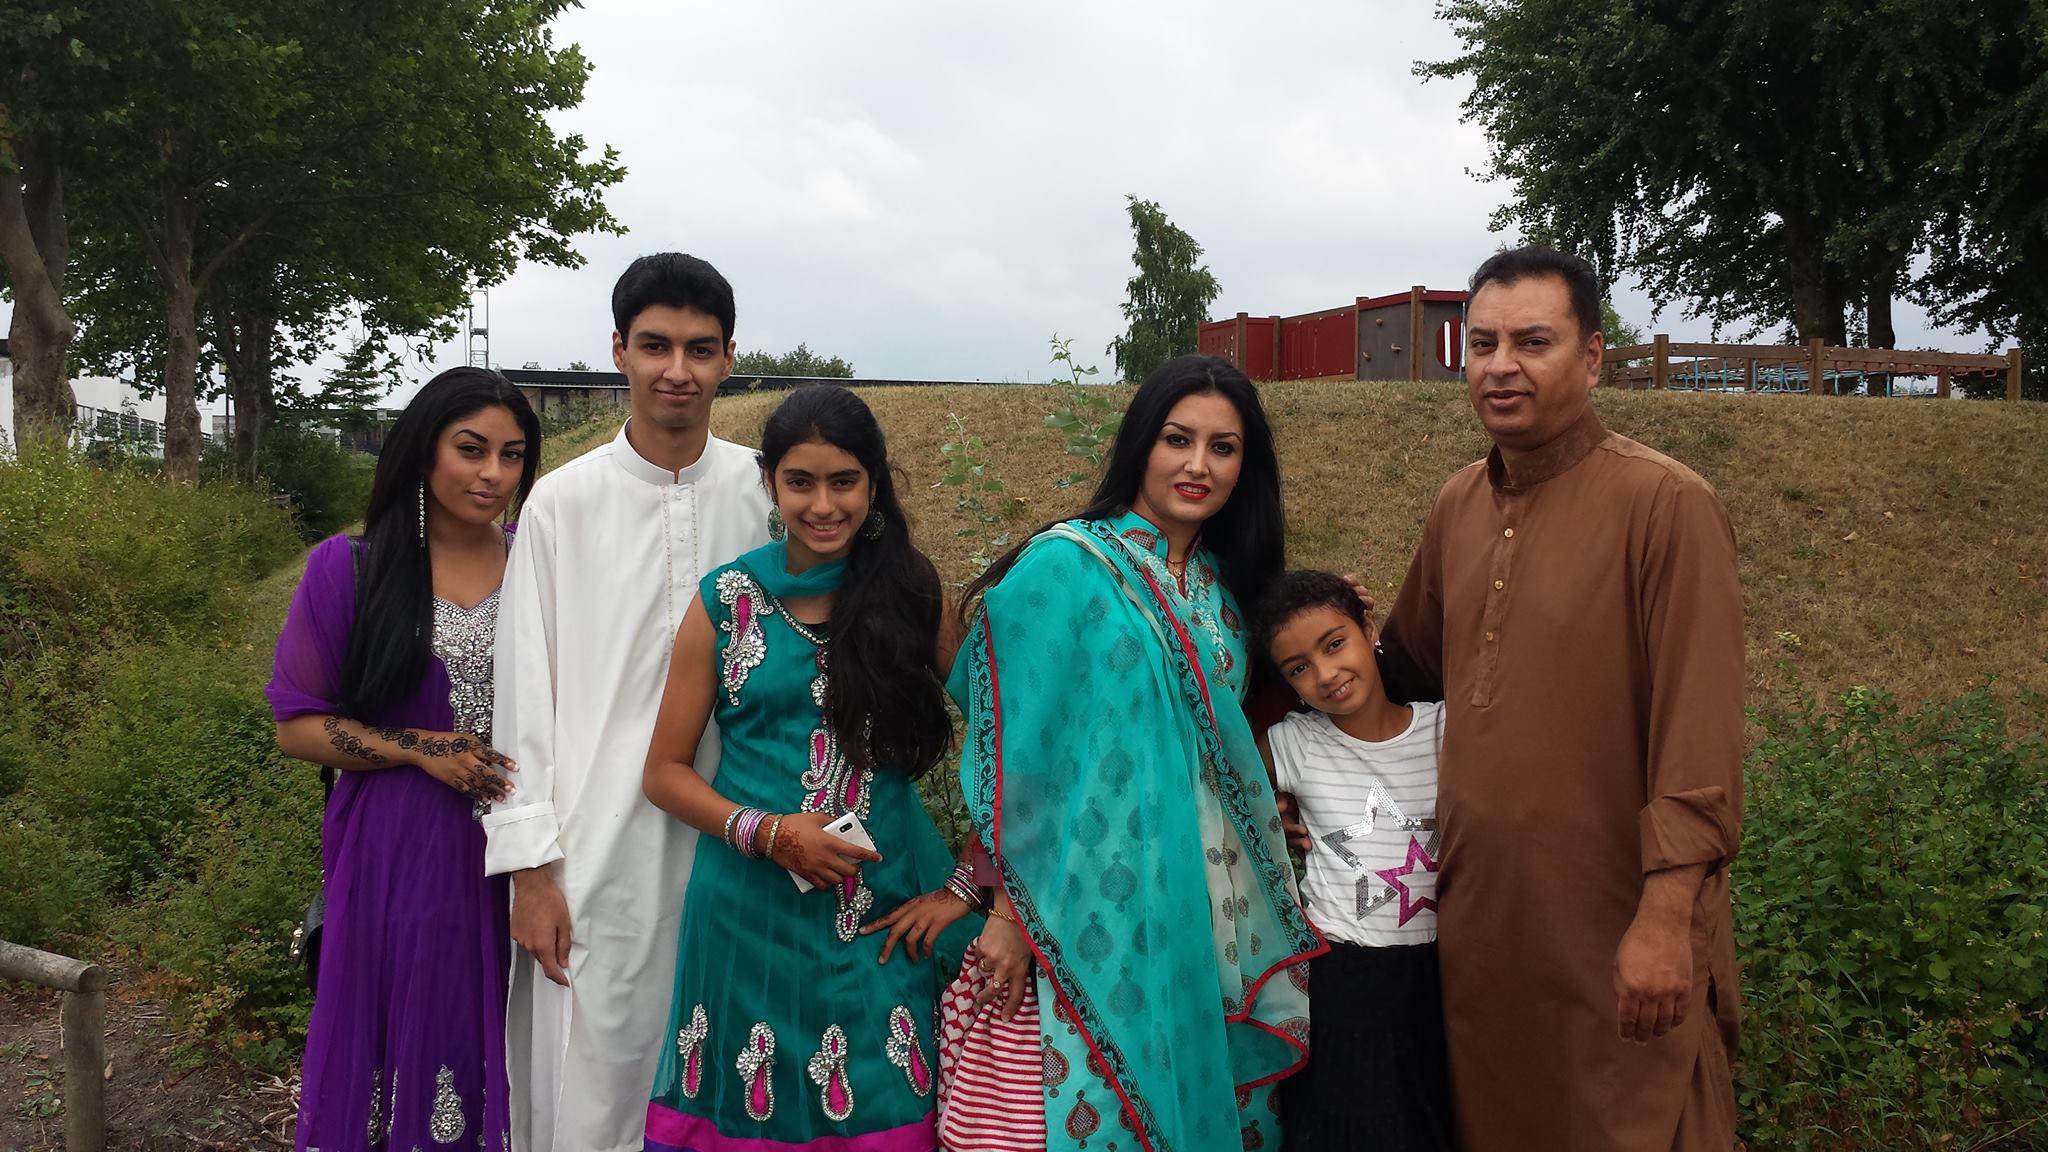 Zaki Agha (nr 2. fra venstre) med sin familie. 